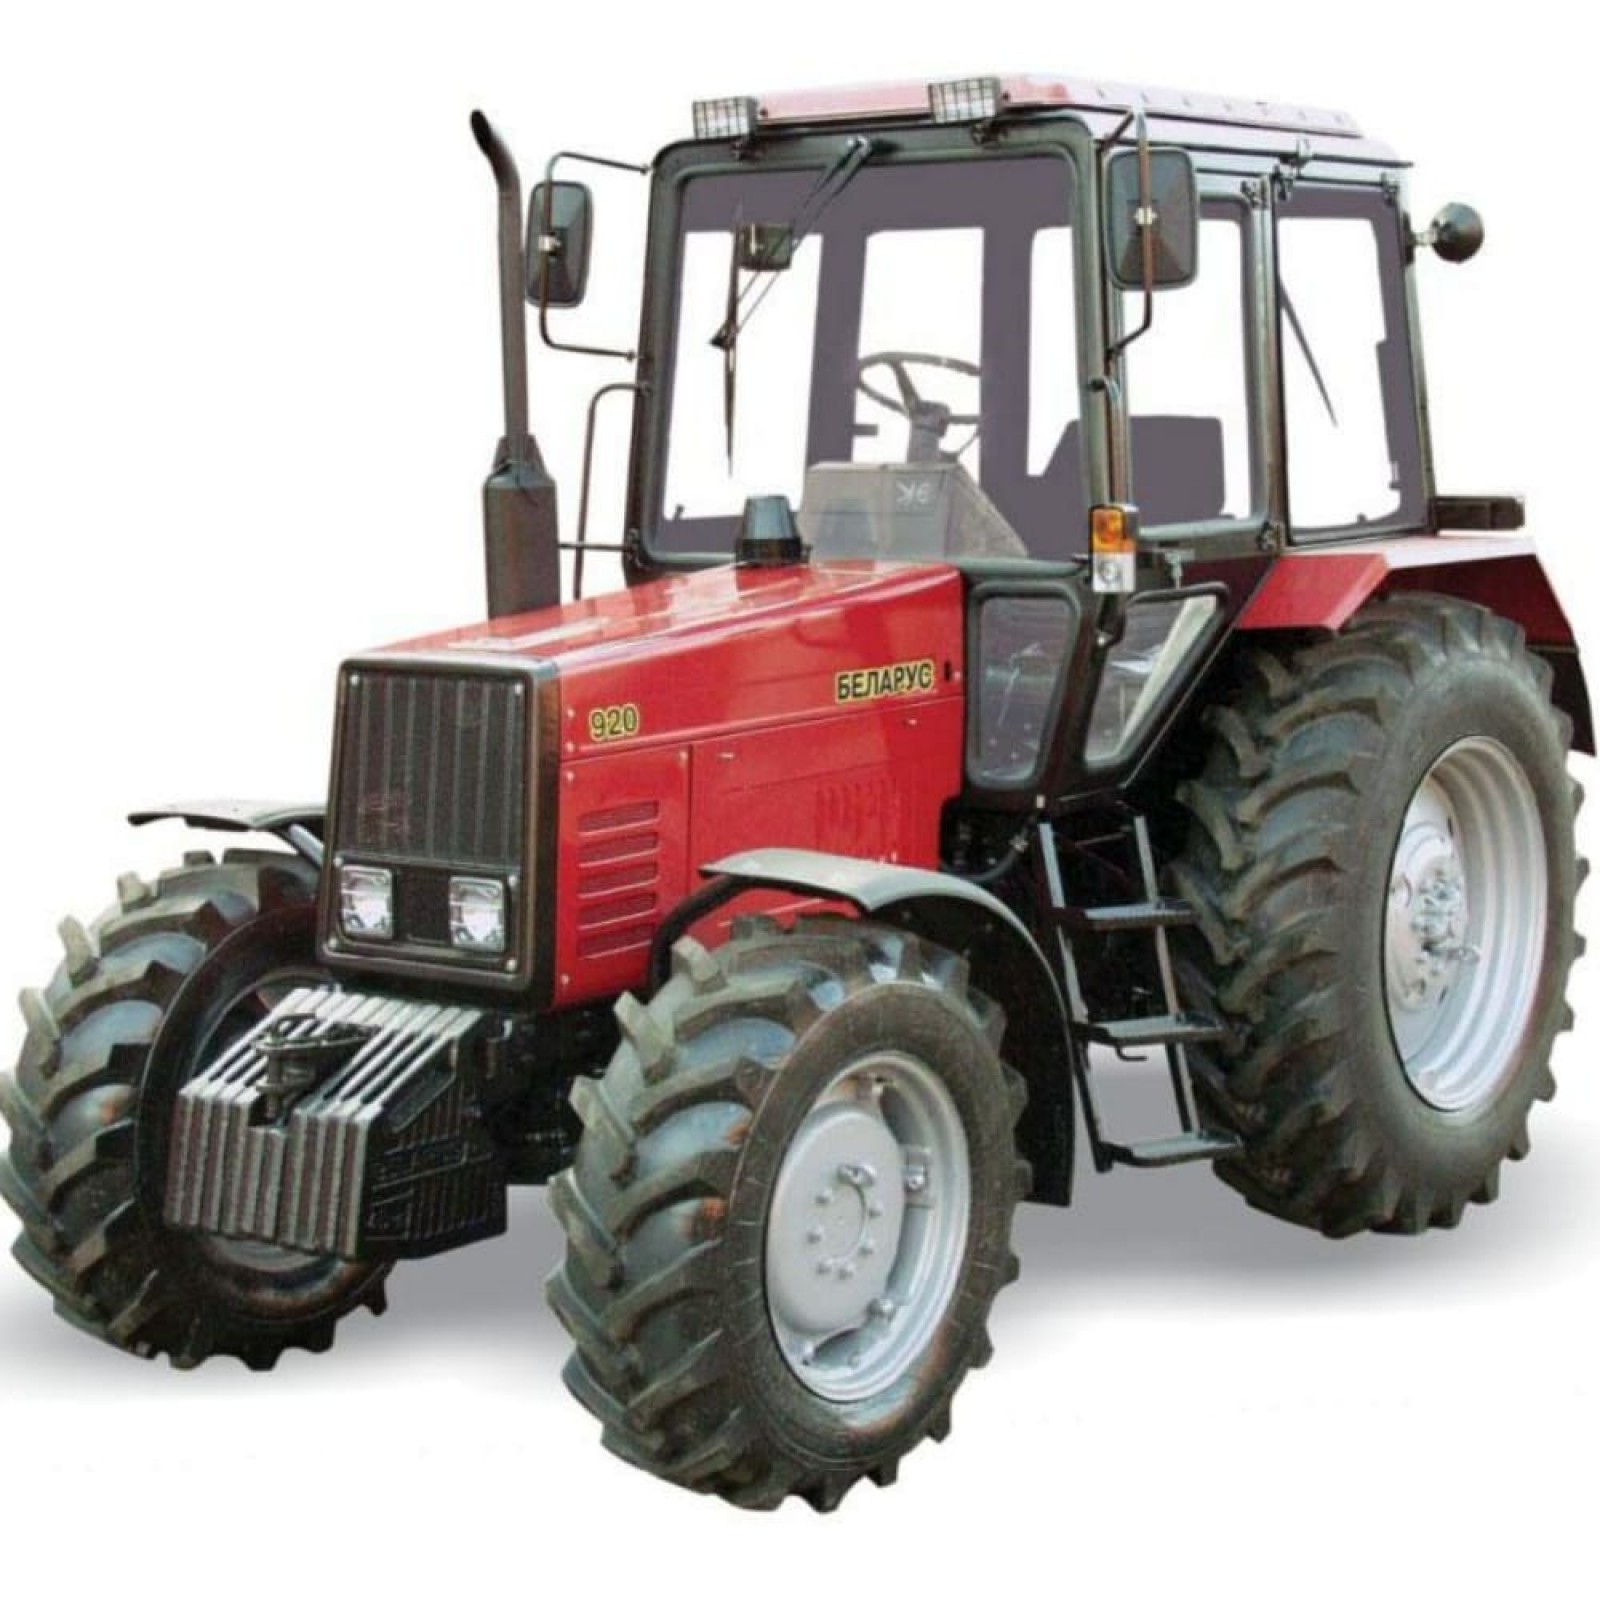 Тракторы BELARUS-920-920.2